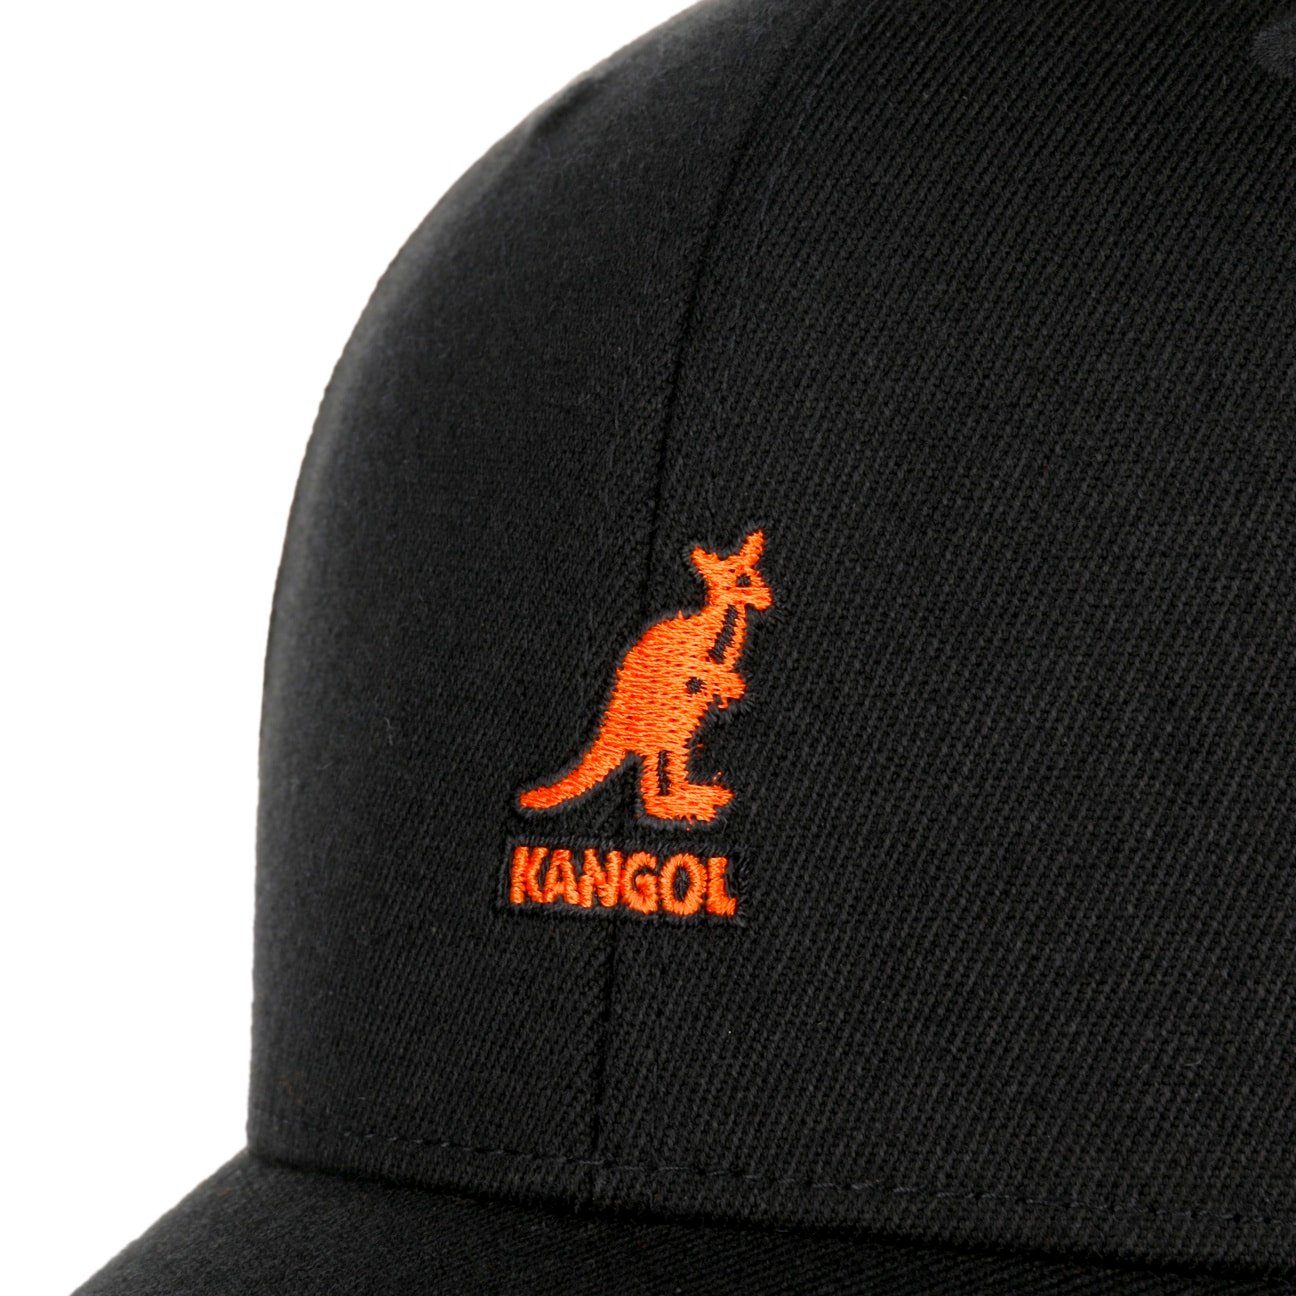 (1-St) geschlossen Baseballcap Kangol schwarz-orange Baseball Hinten Cap